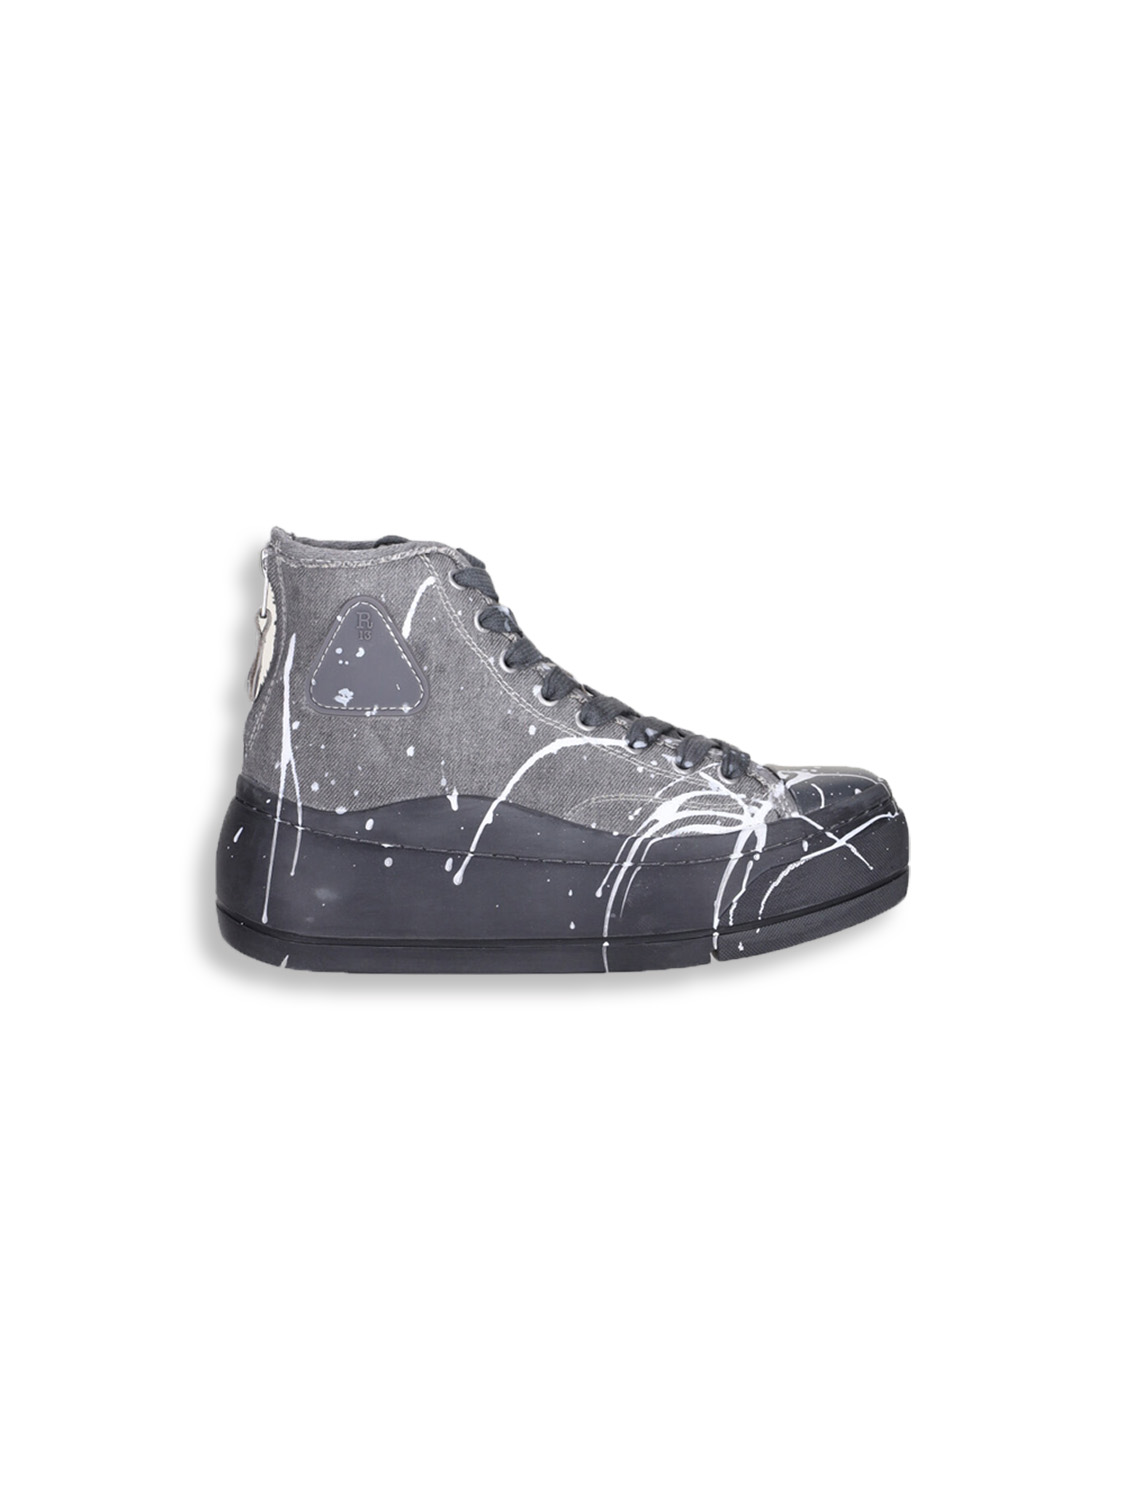 Kurt High Top Sneaker - Sneaker in denim grigio chiaro con spruzzi di colore 